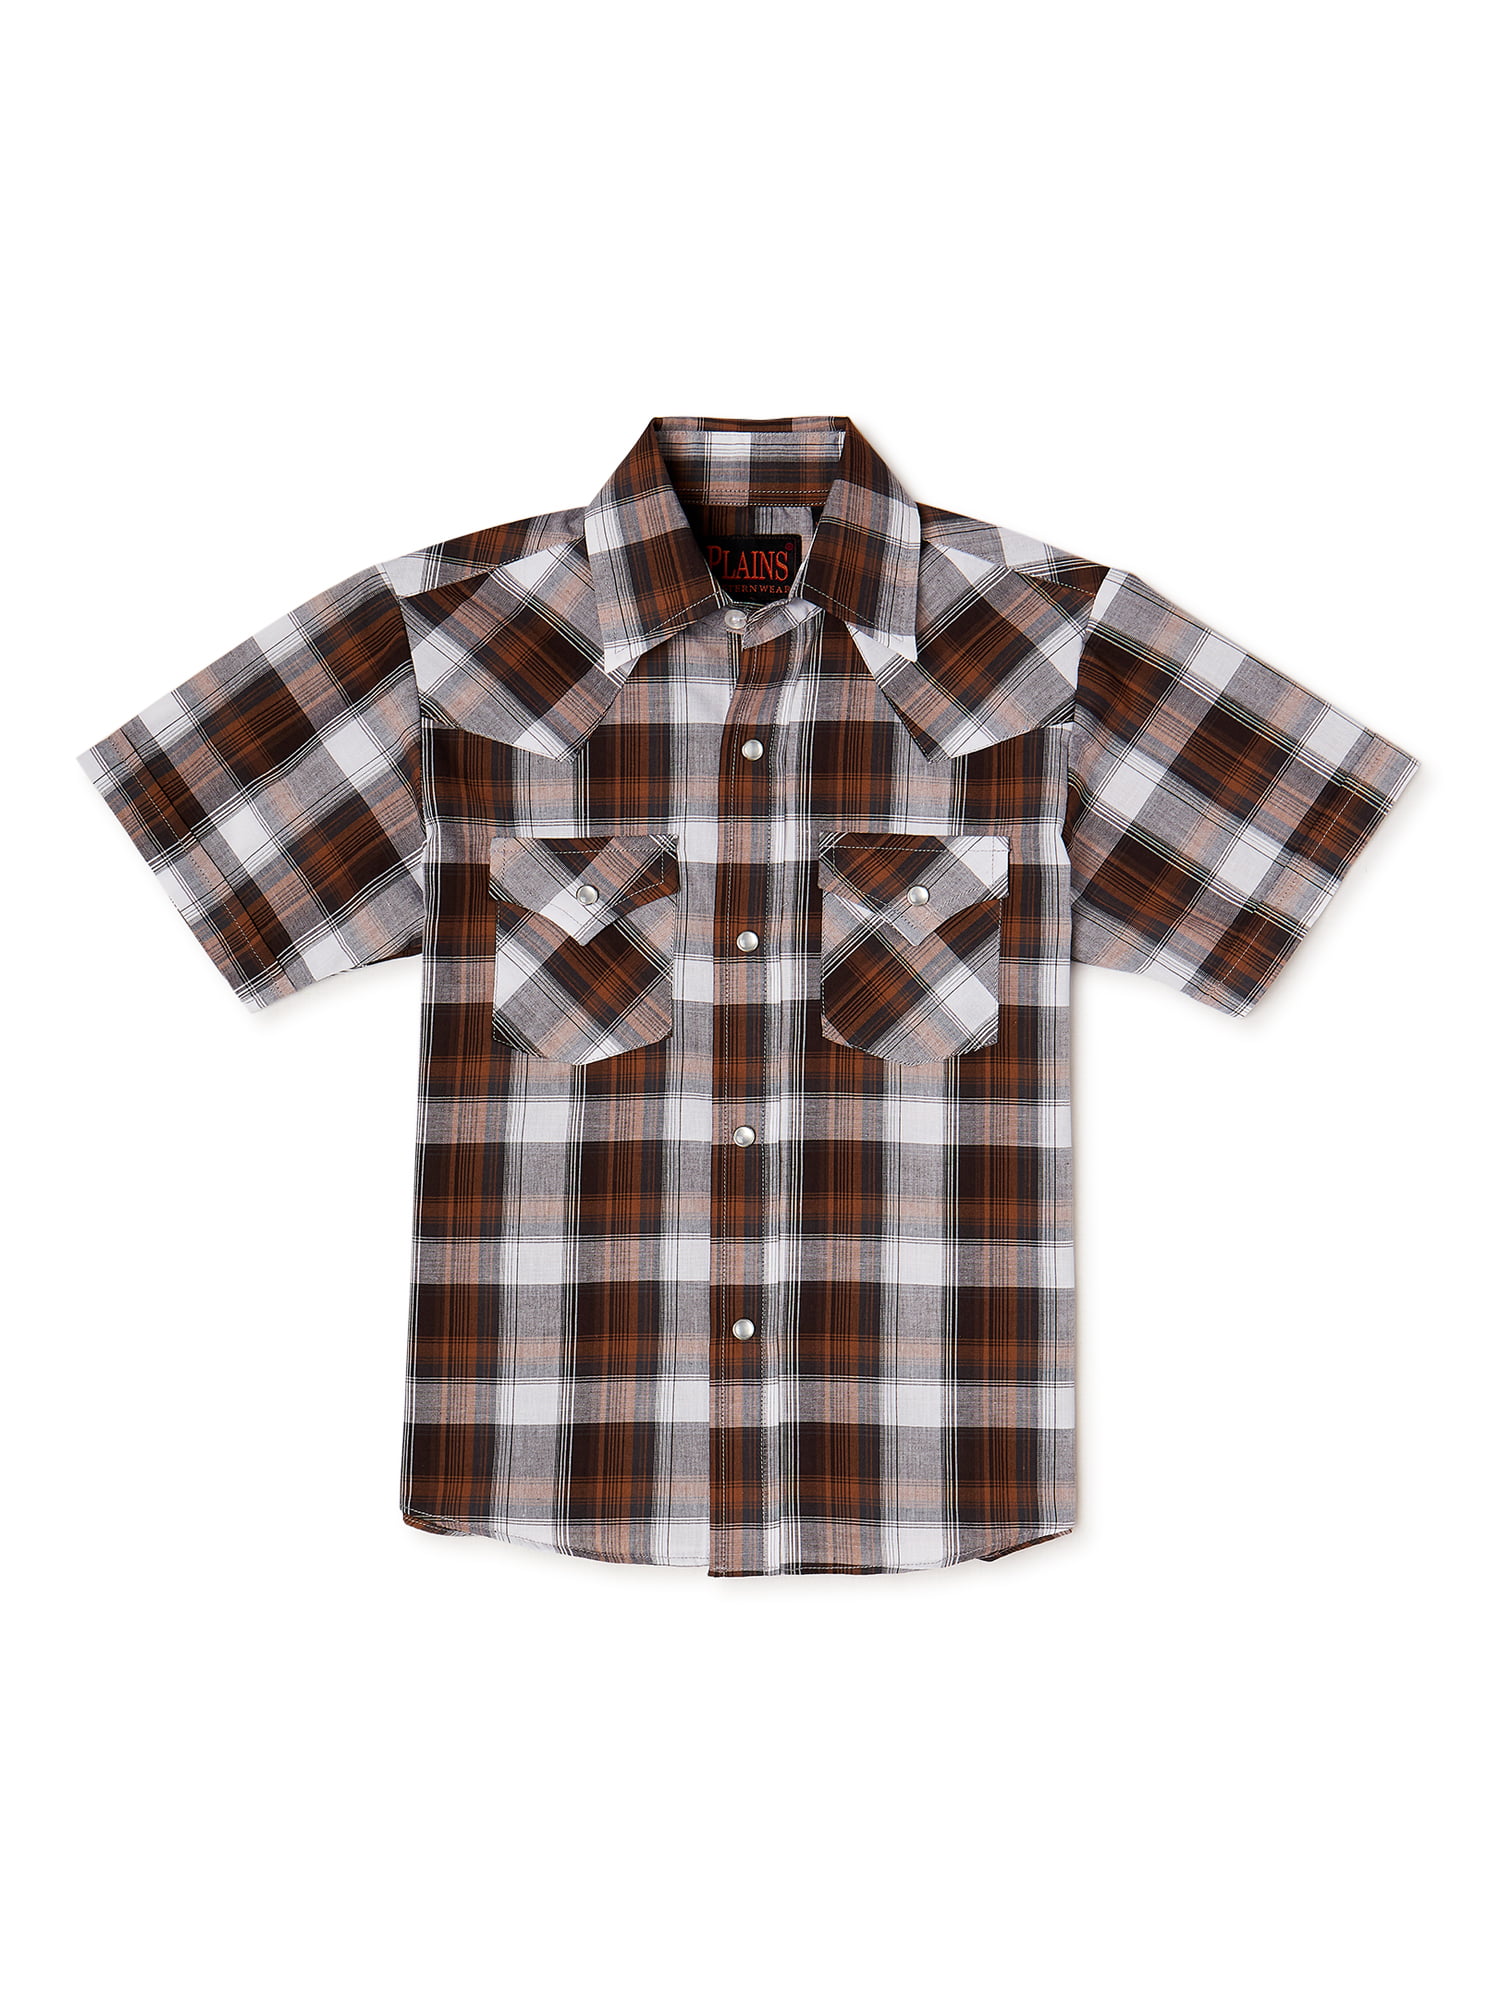 Plains Boys Short Sleeve Basic Snap Western Shirt, Sizes XS-L - Walmart.com